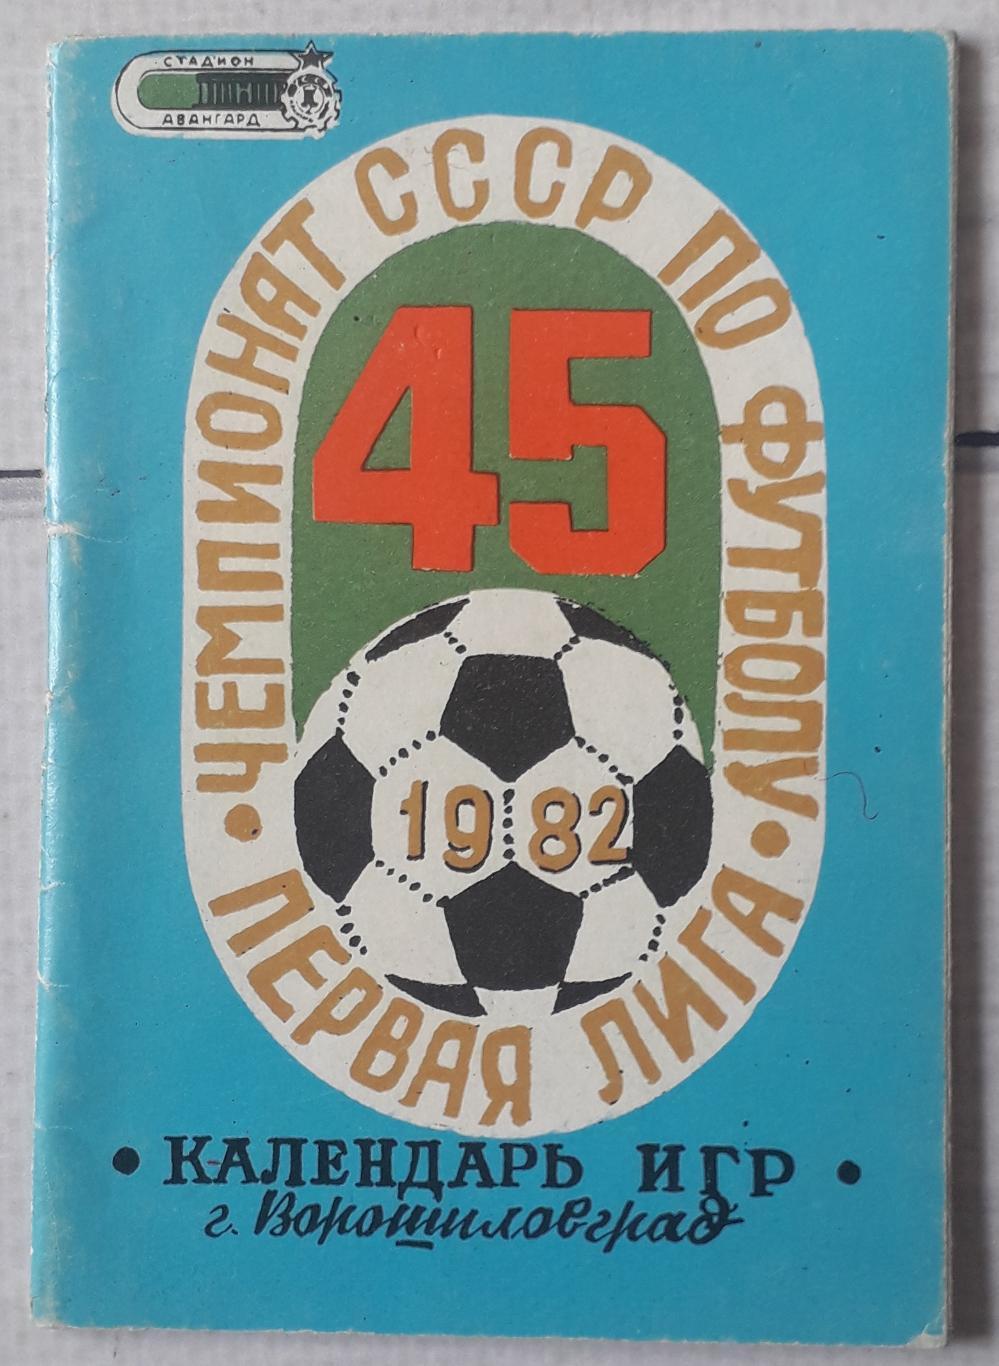 Календарь игр Заря Луганск 1982.